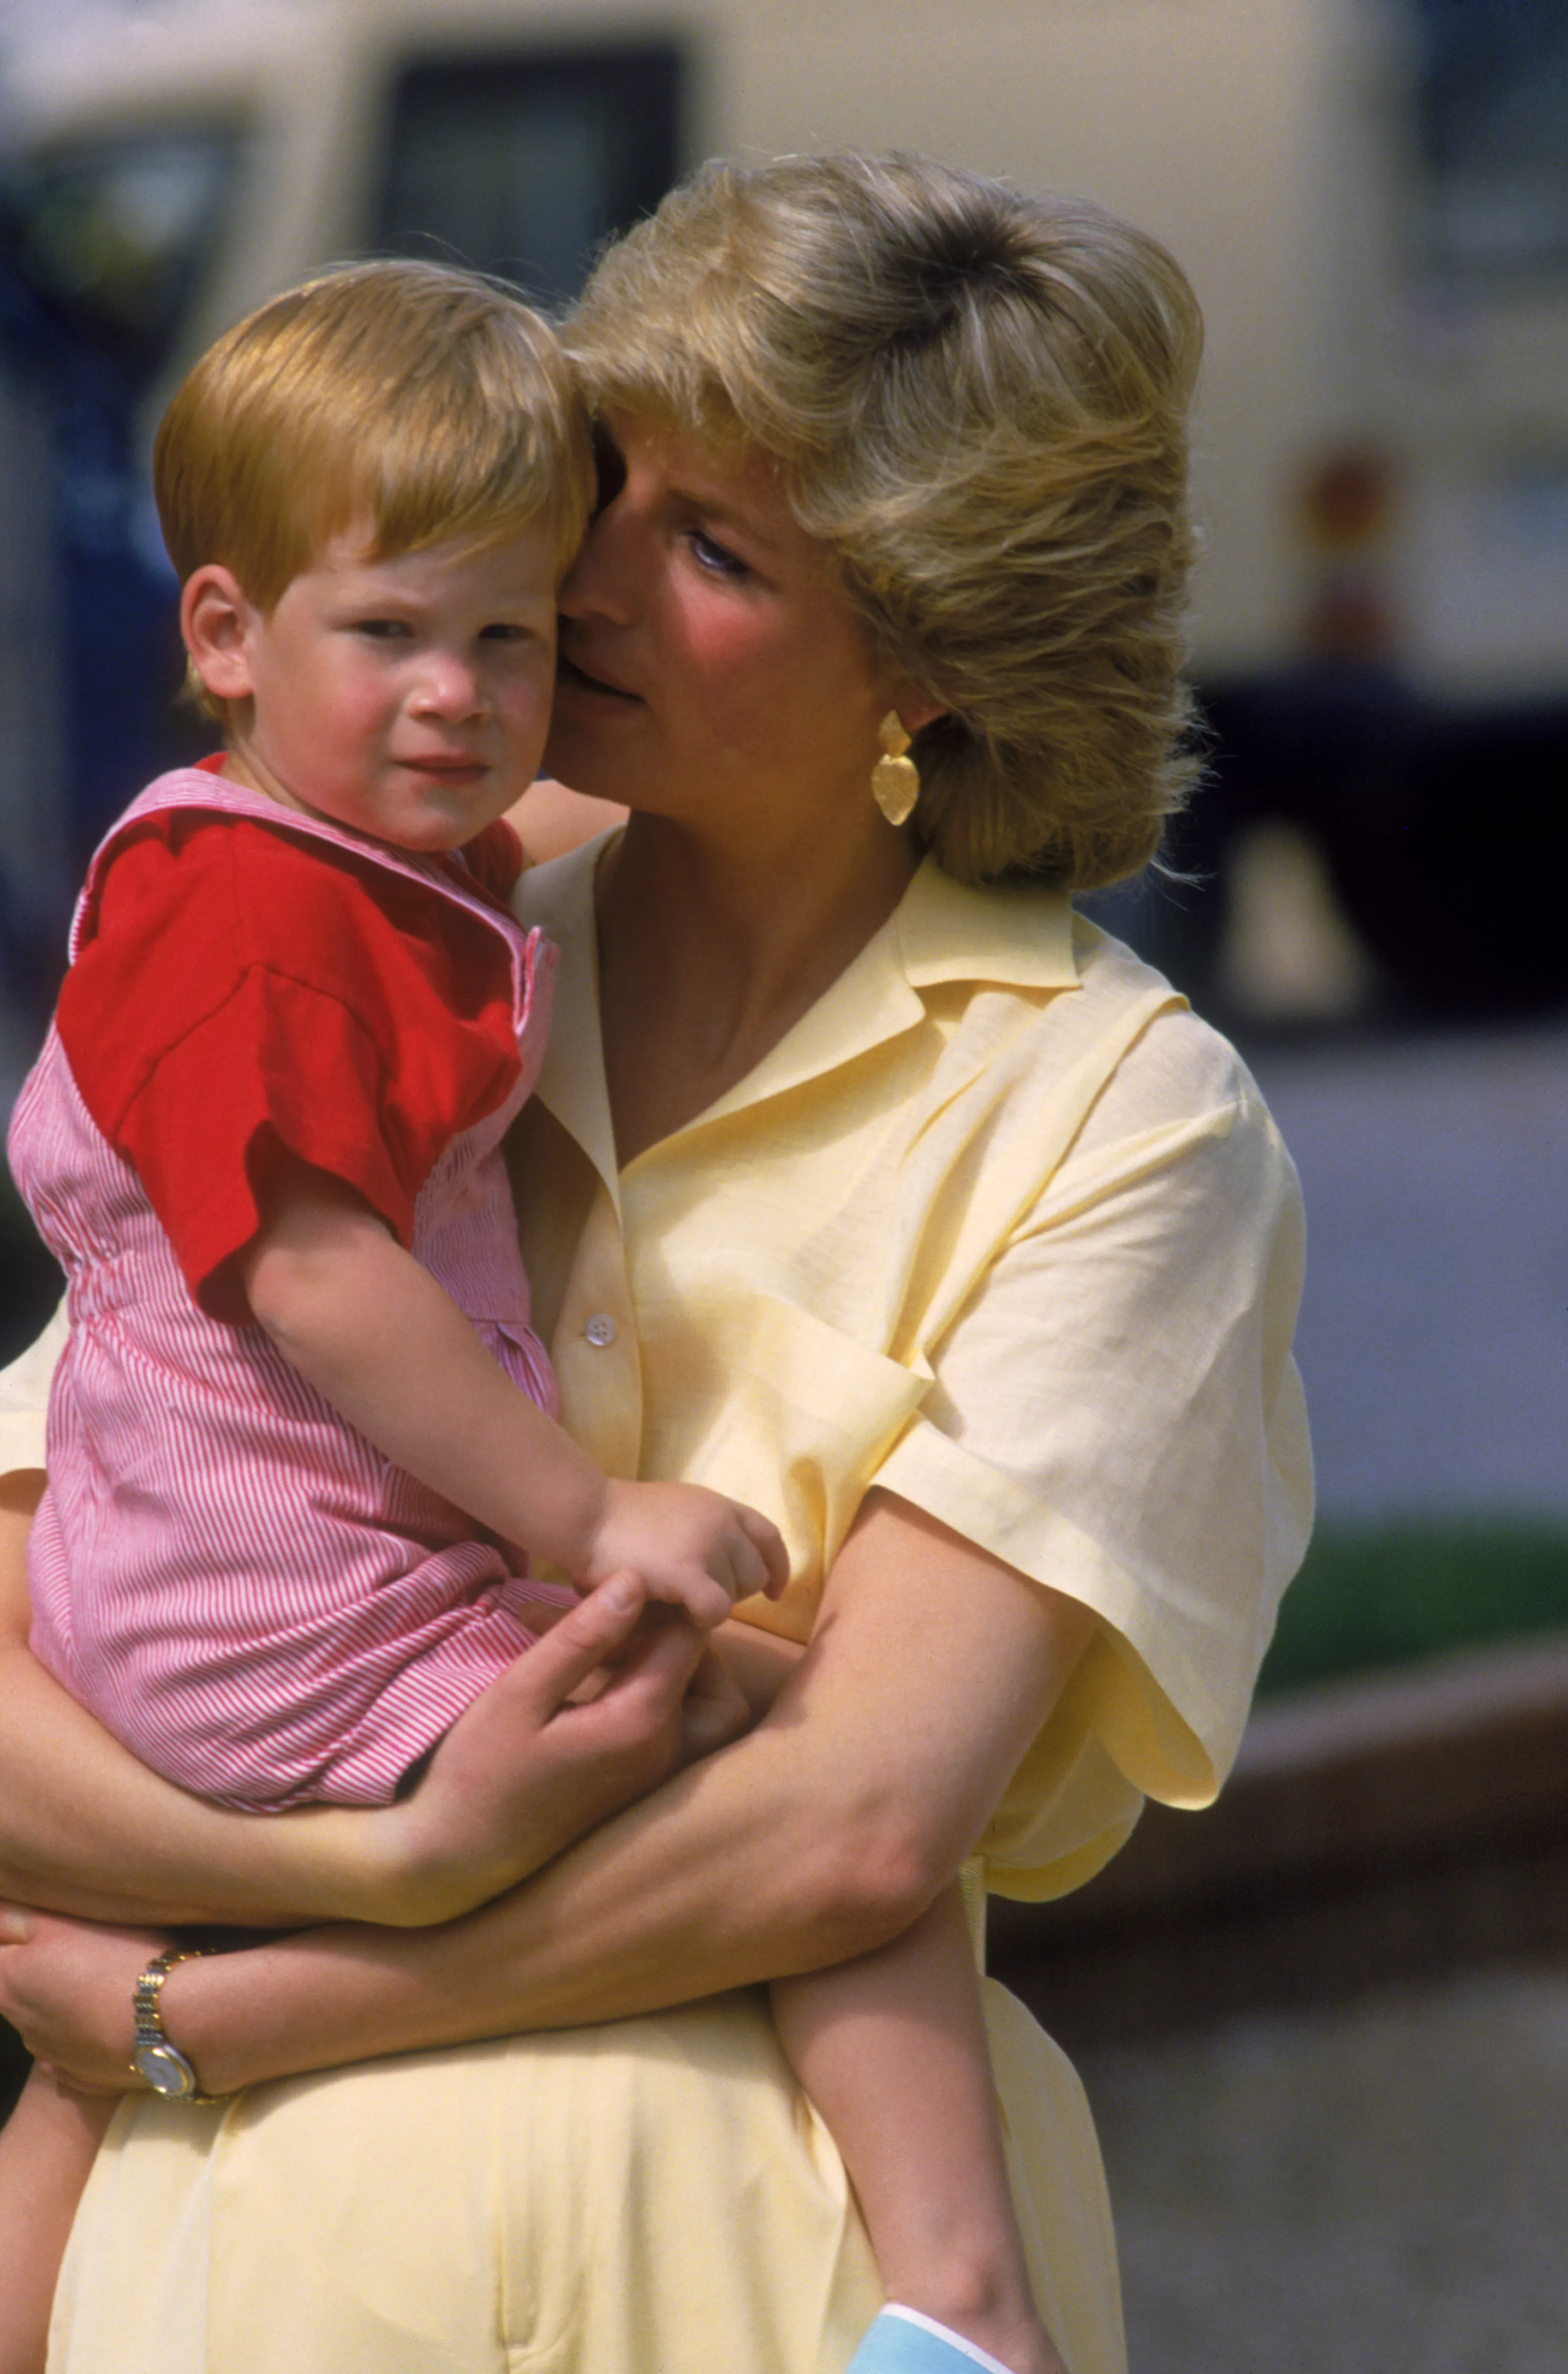 Принцесса Диана и принц Гарри, 1987 год